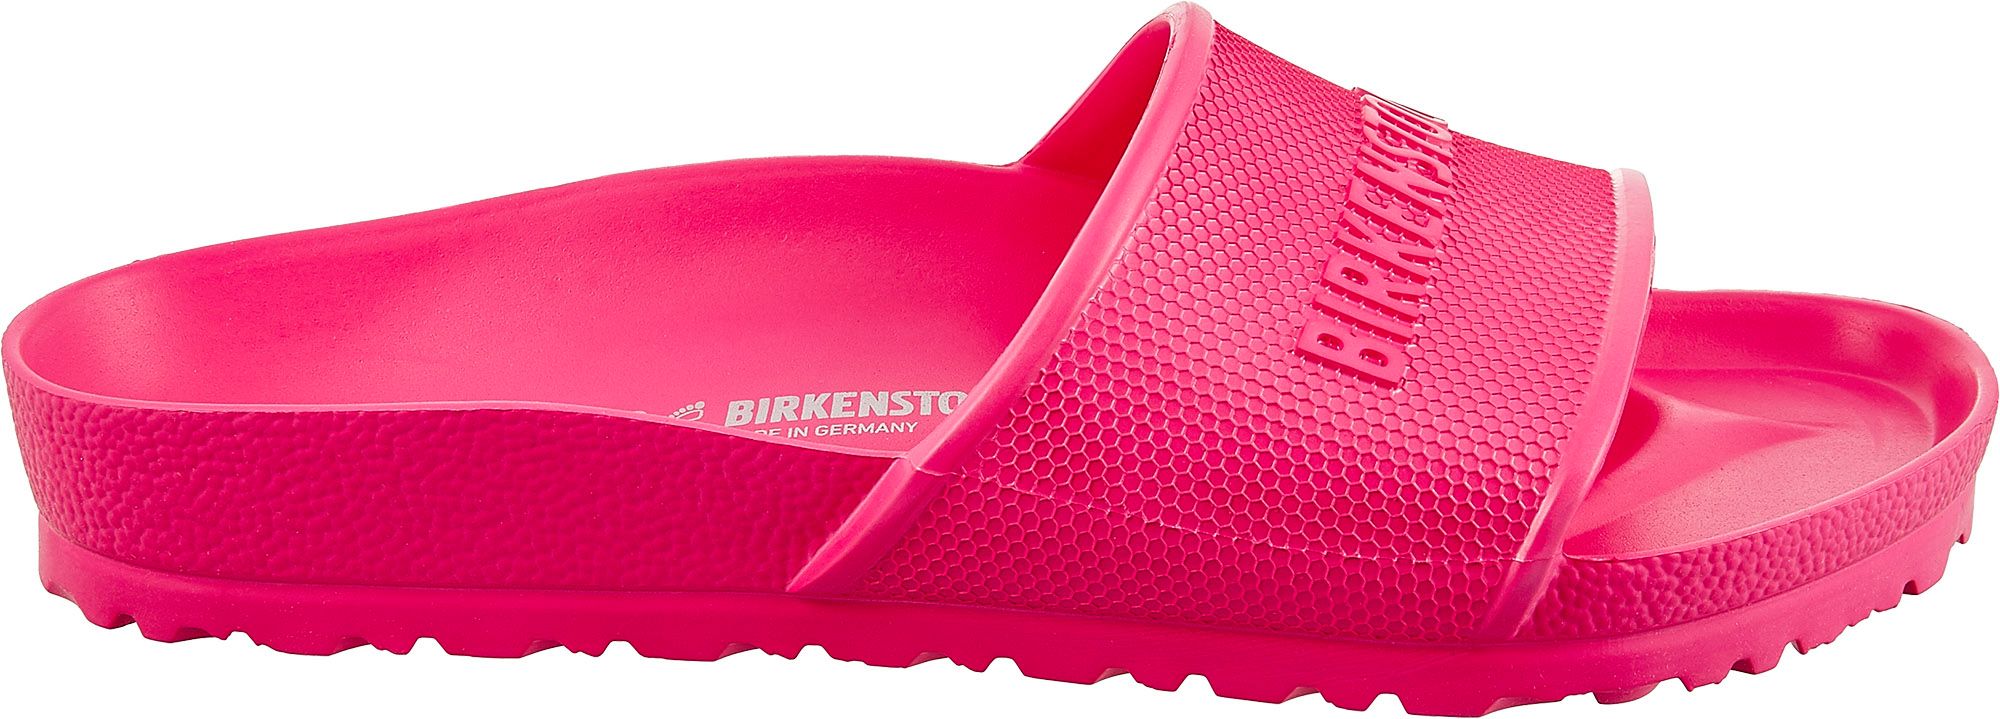 birkenstock pink eva